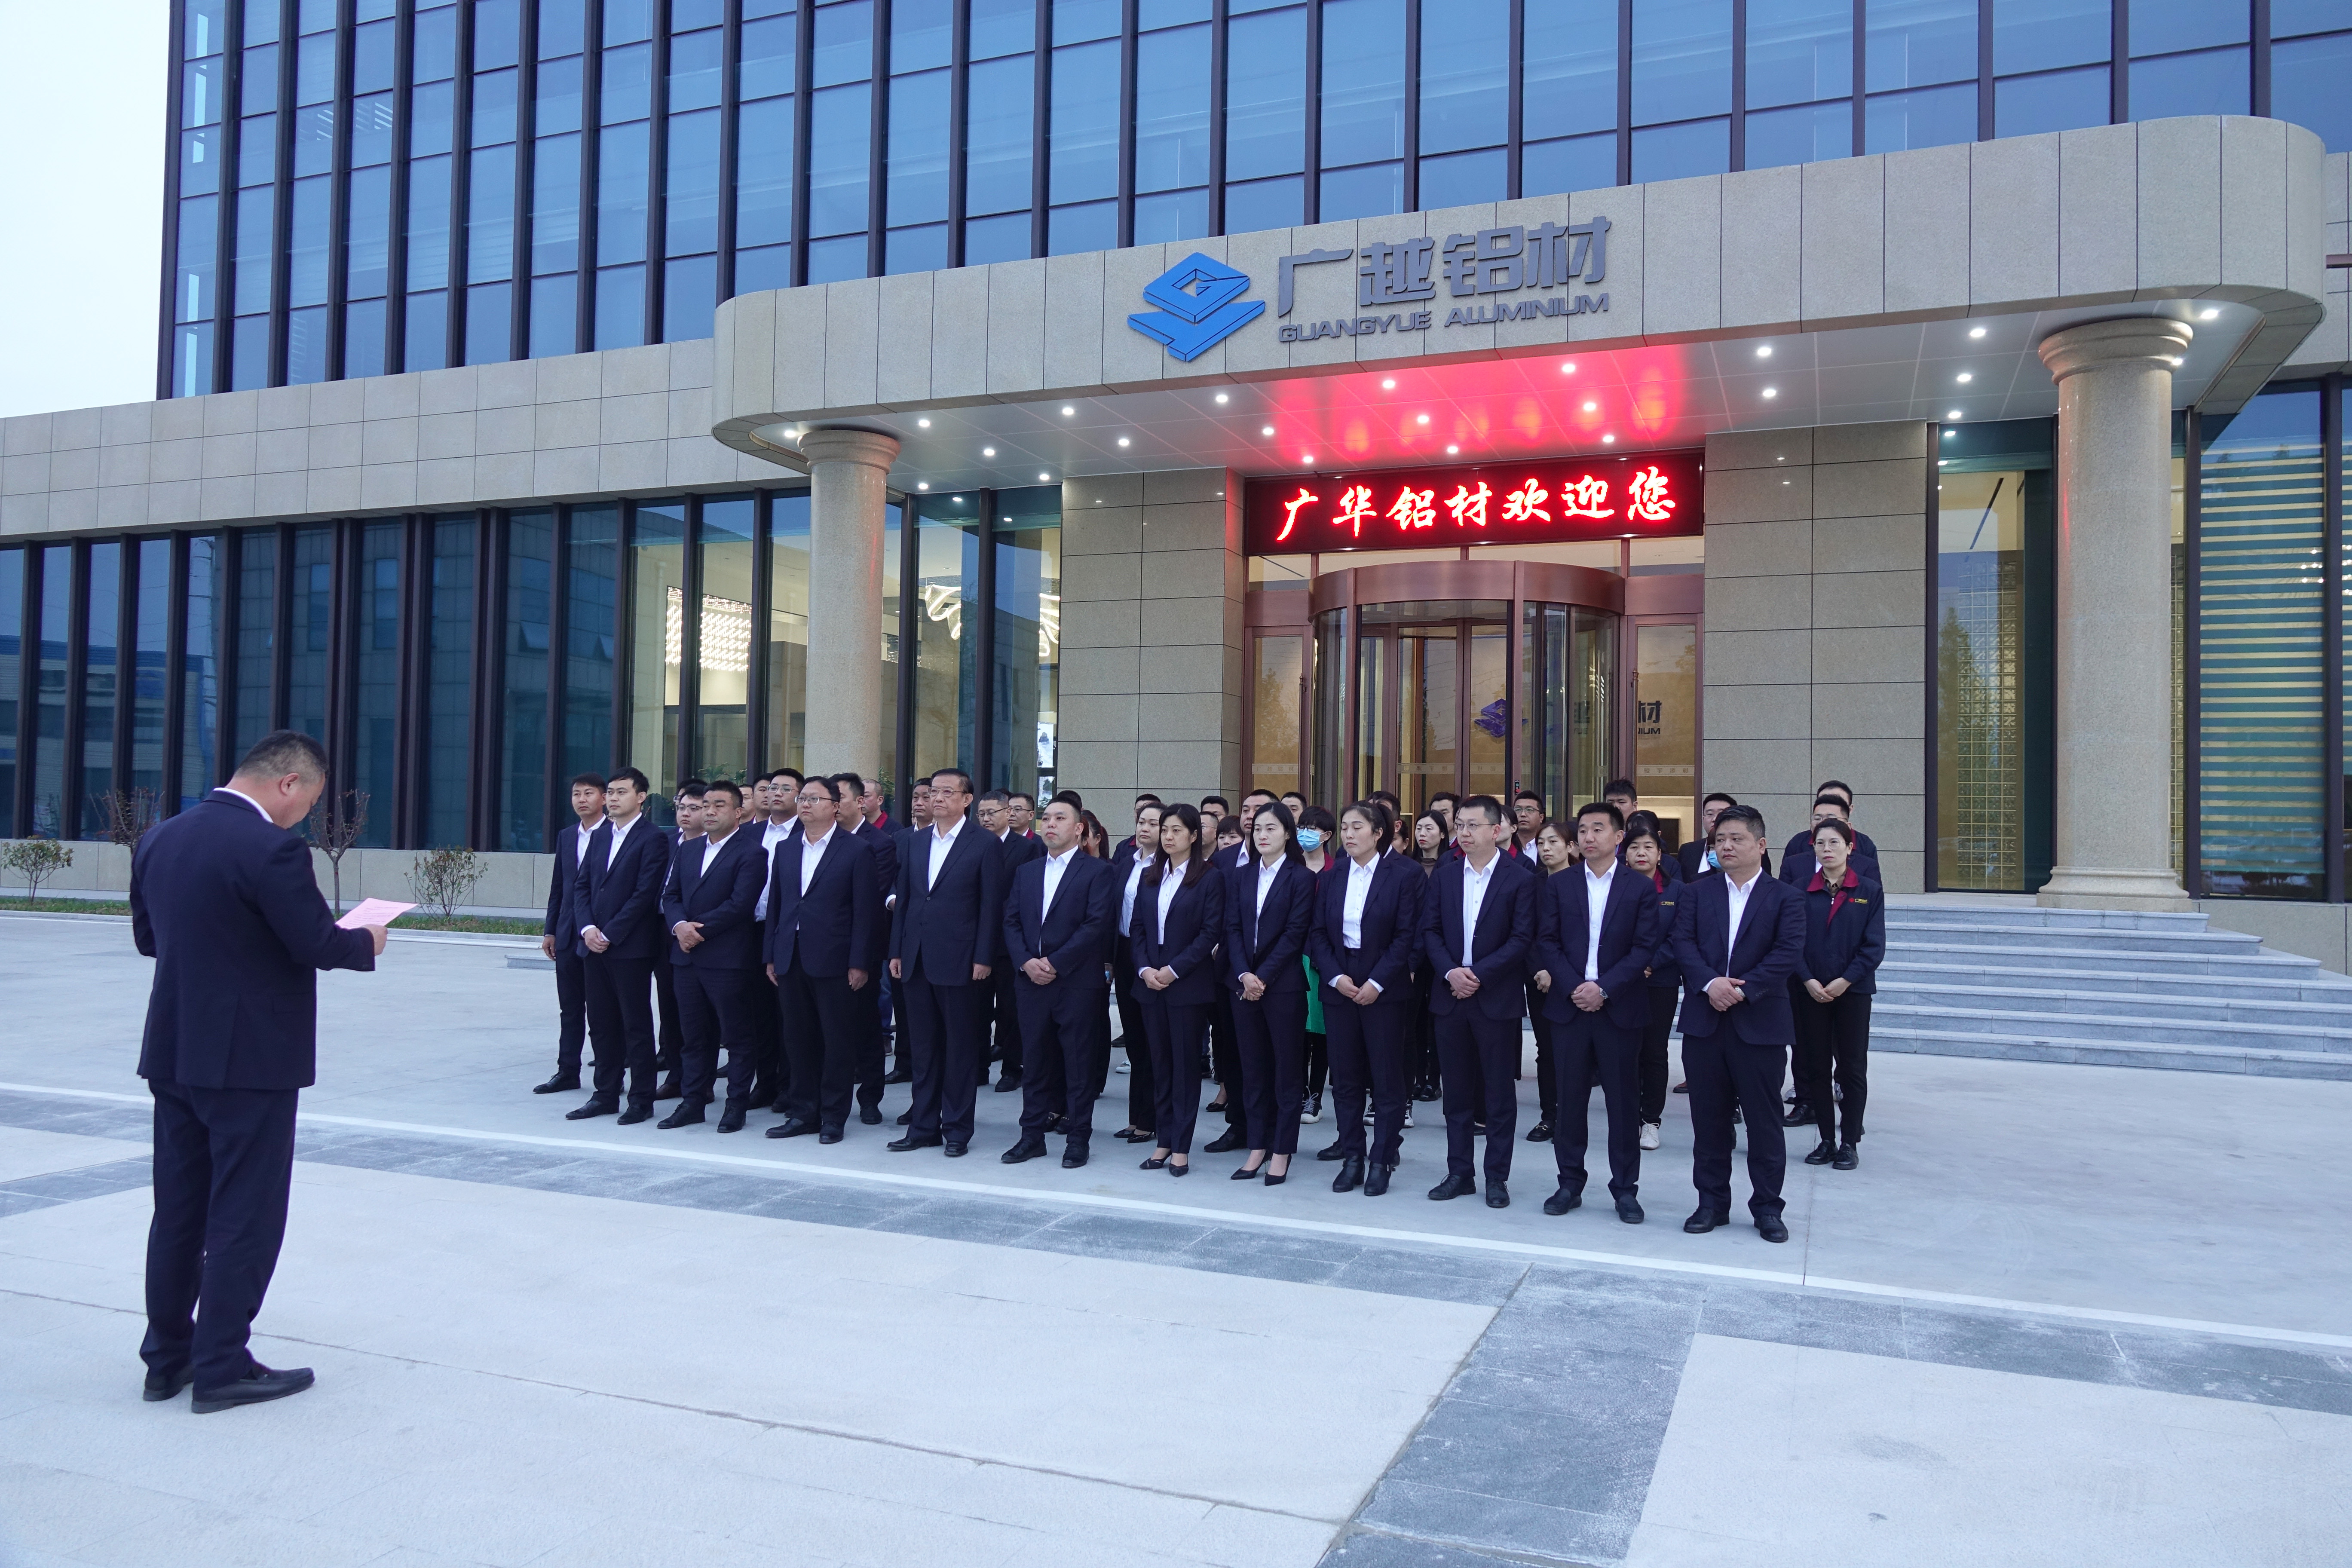 熱烈慶祝濰坊廣華鋁材有限公司新辦公大樓正式啟用